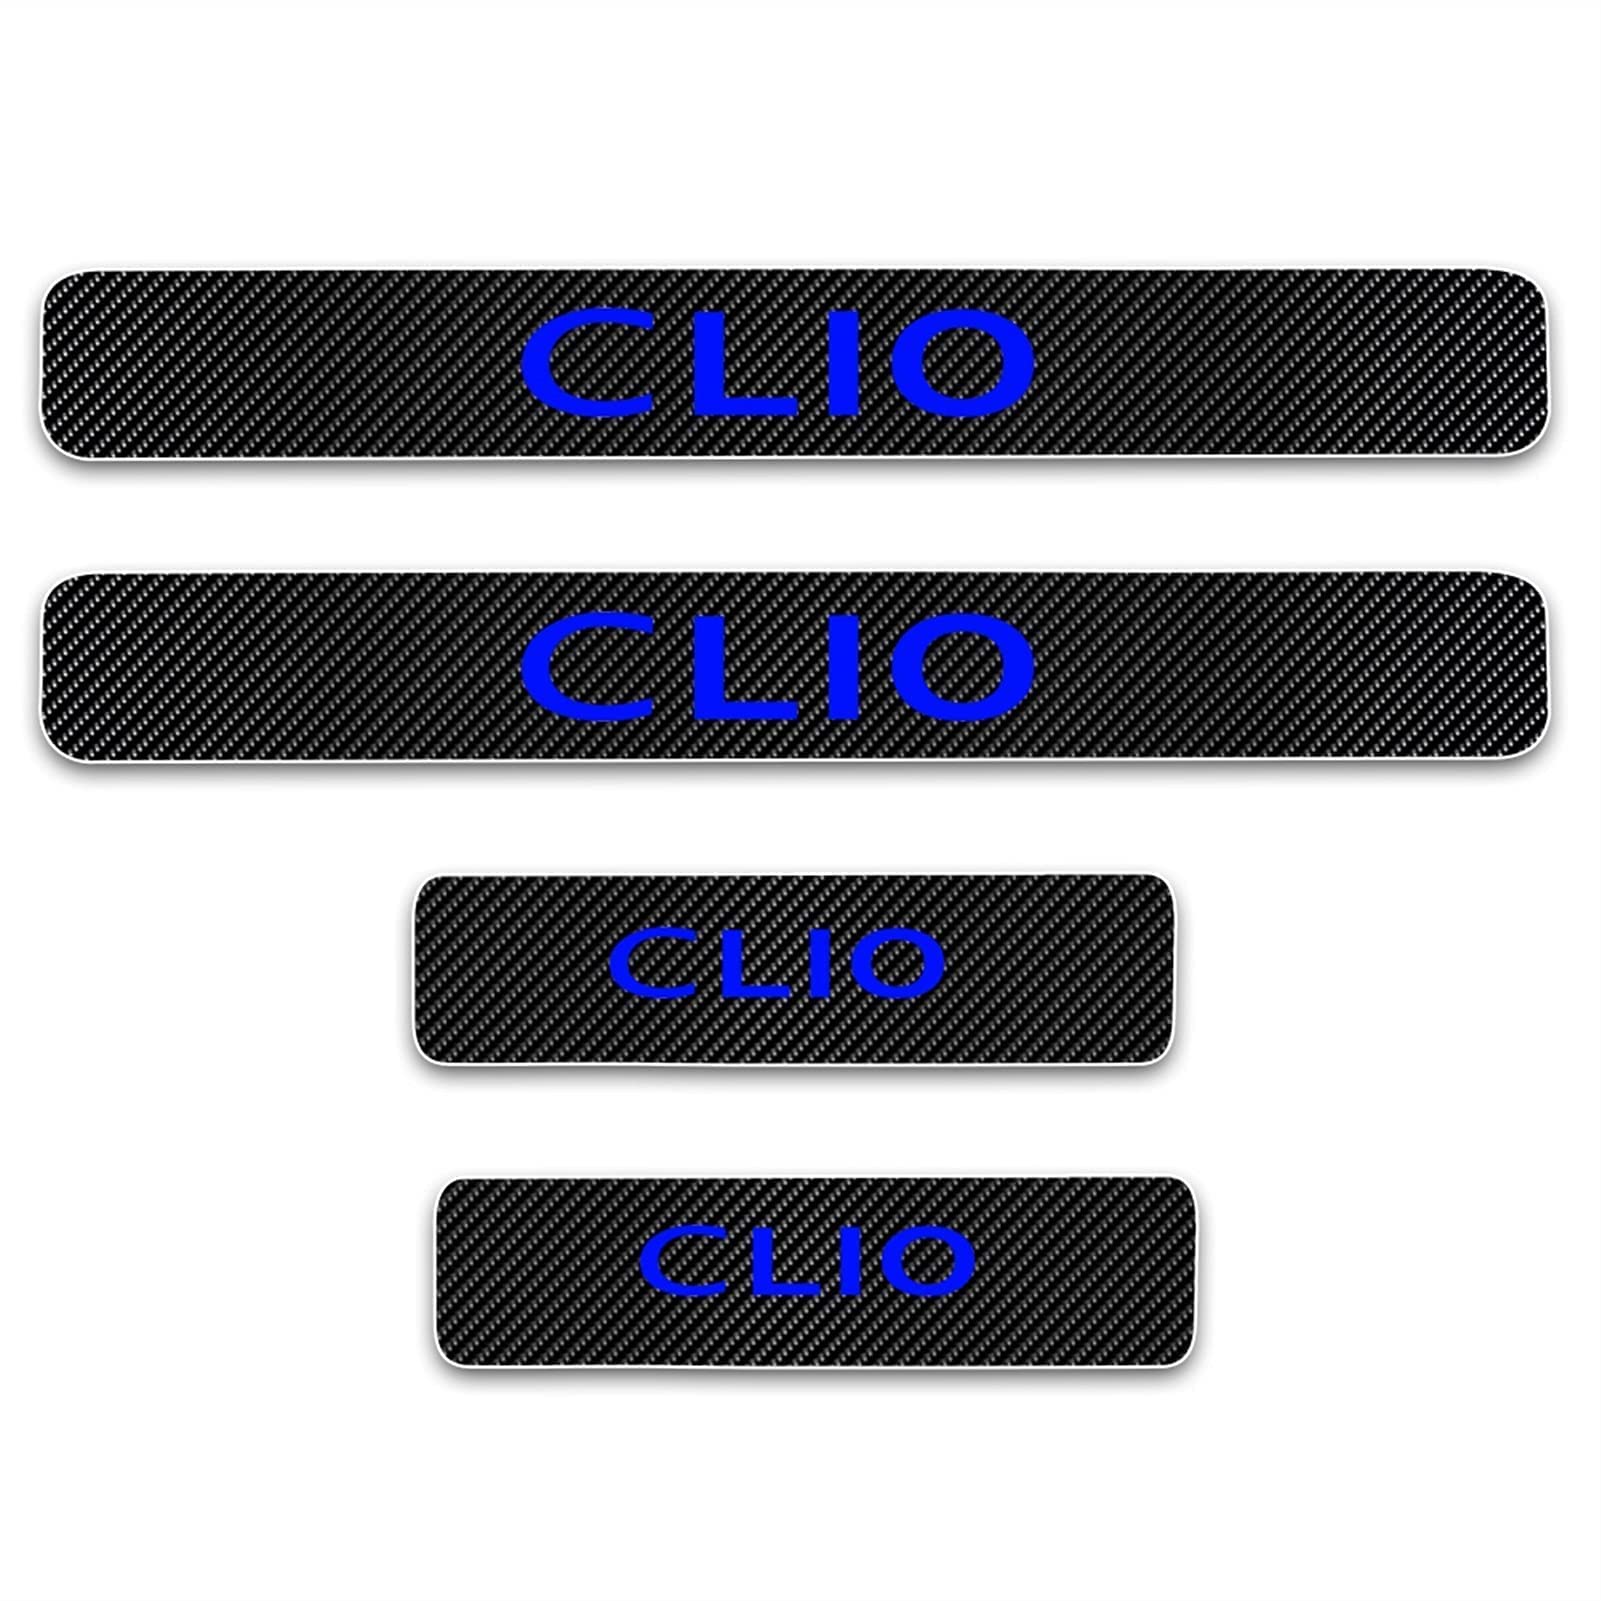 4 Stück Kohlefaser Einstiegsleisten Schutz für Ren-Ault CLIO, Auto Türschweller Kratzschutz Abdeckung Protector Pedal Aufkleber,Blue von JYMLOV